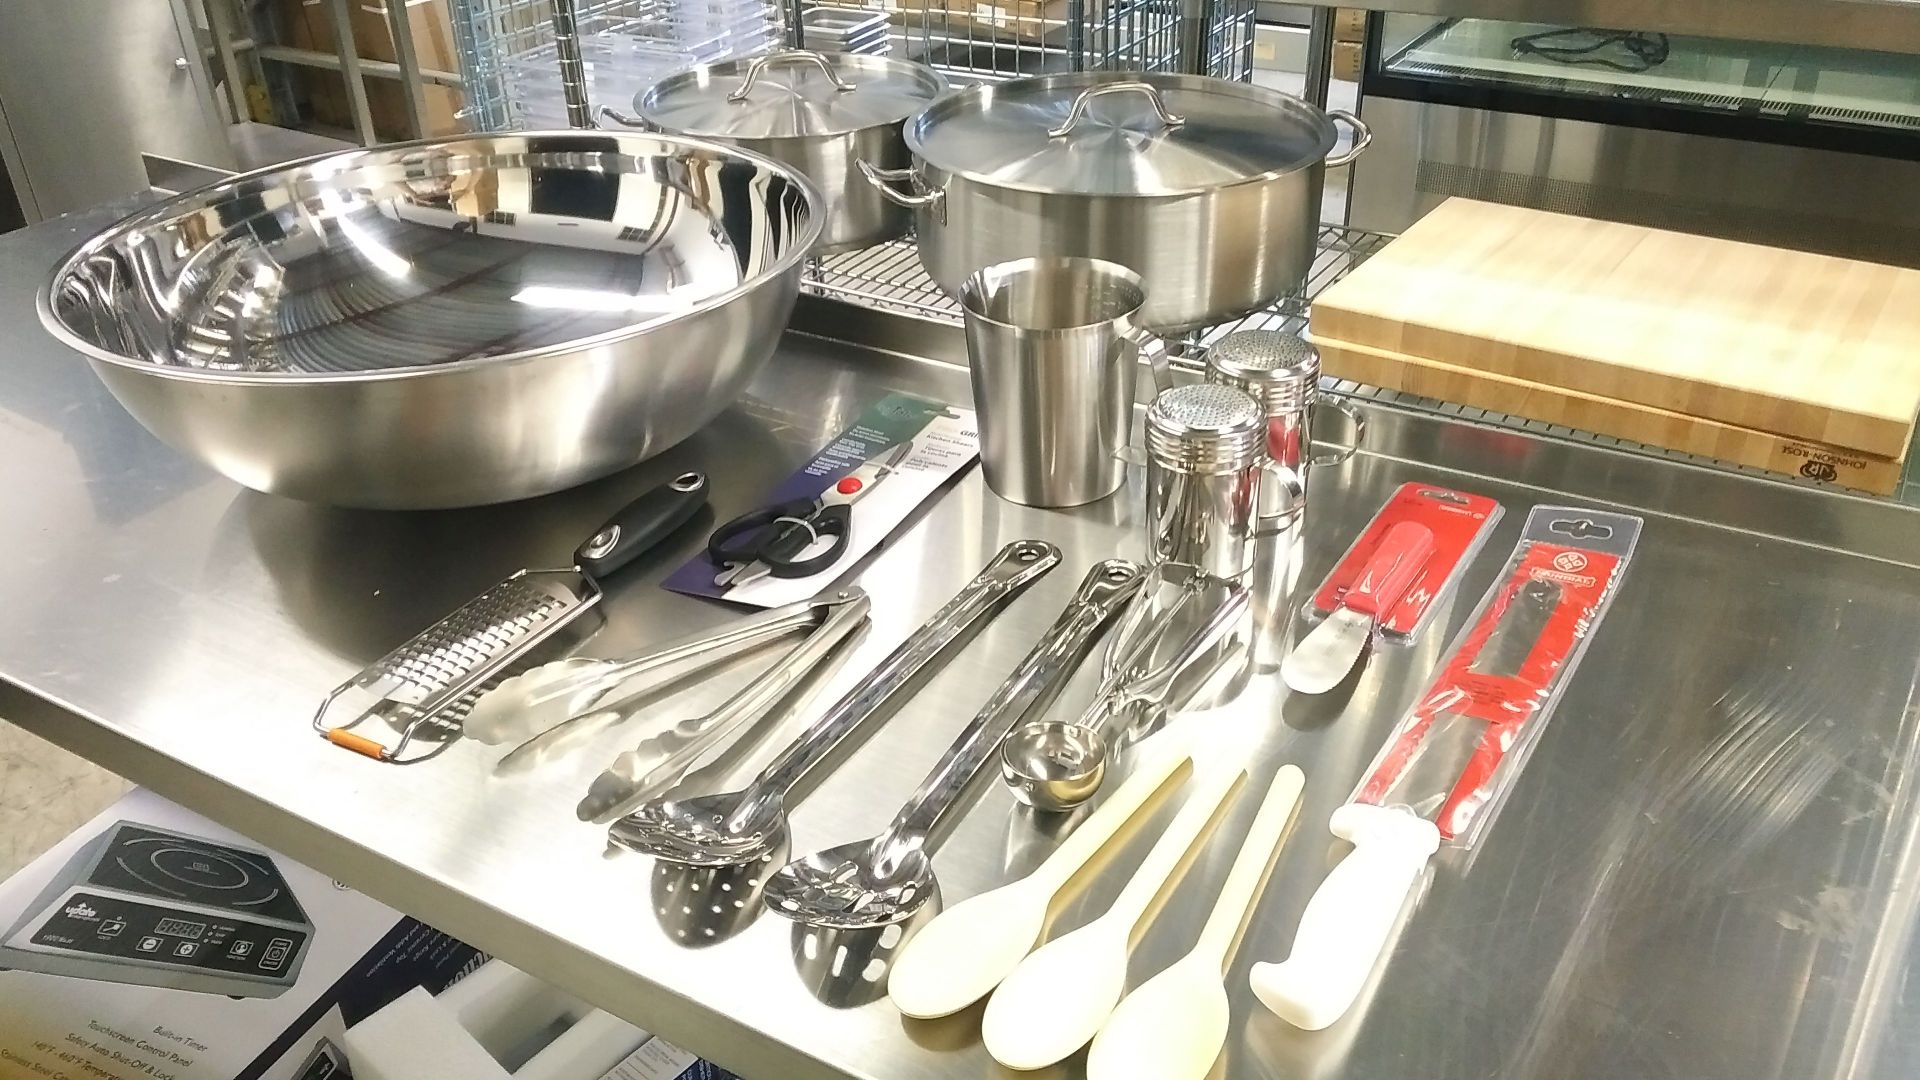 20qt Mixing Bowl Kitchen Tools Set - Lot of 15 Pieces